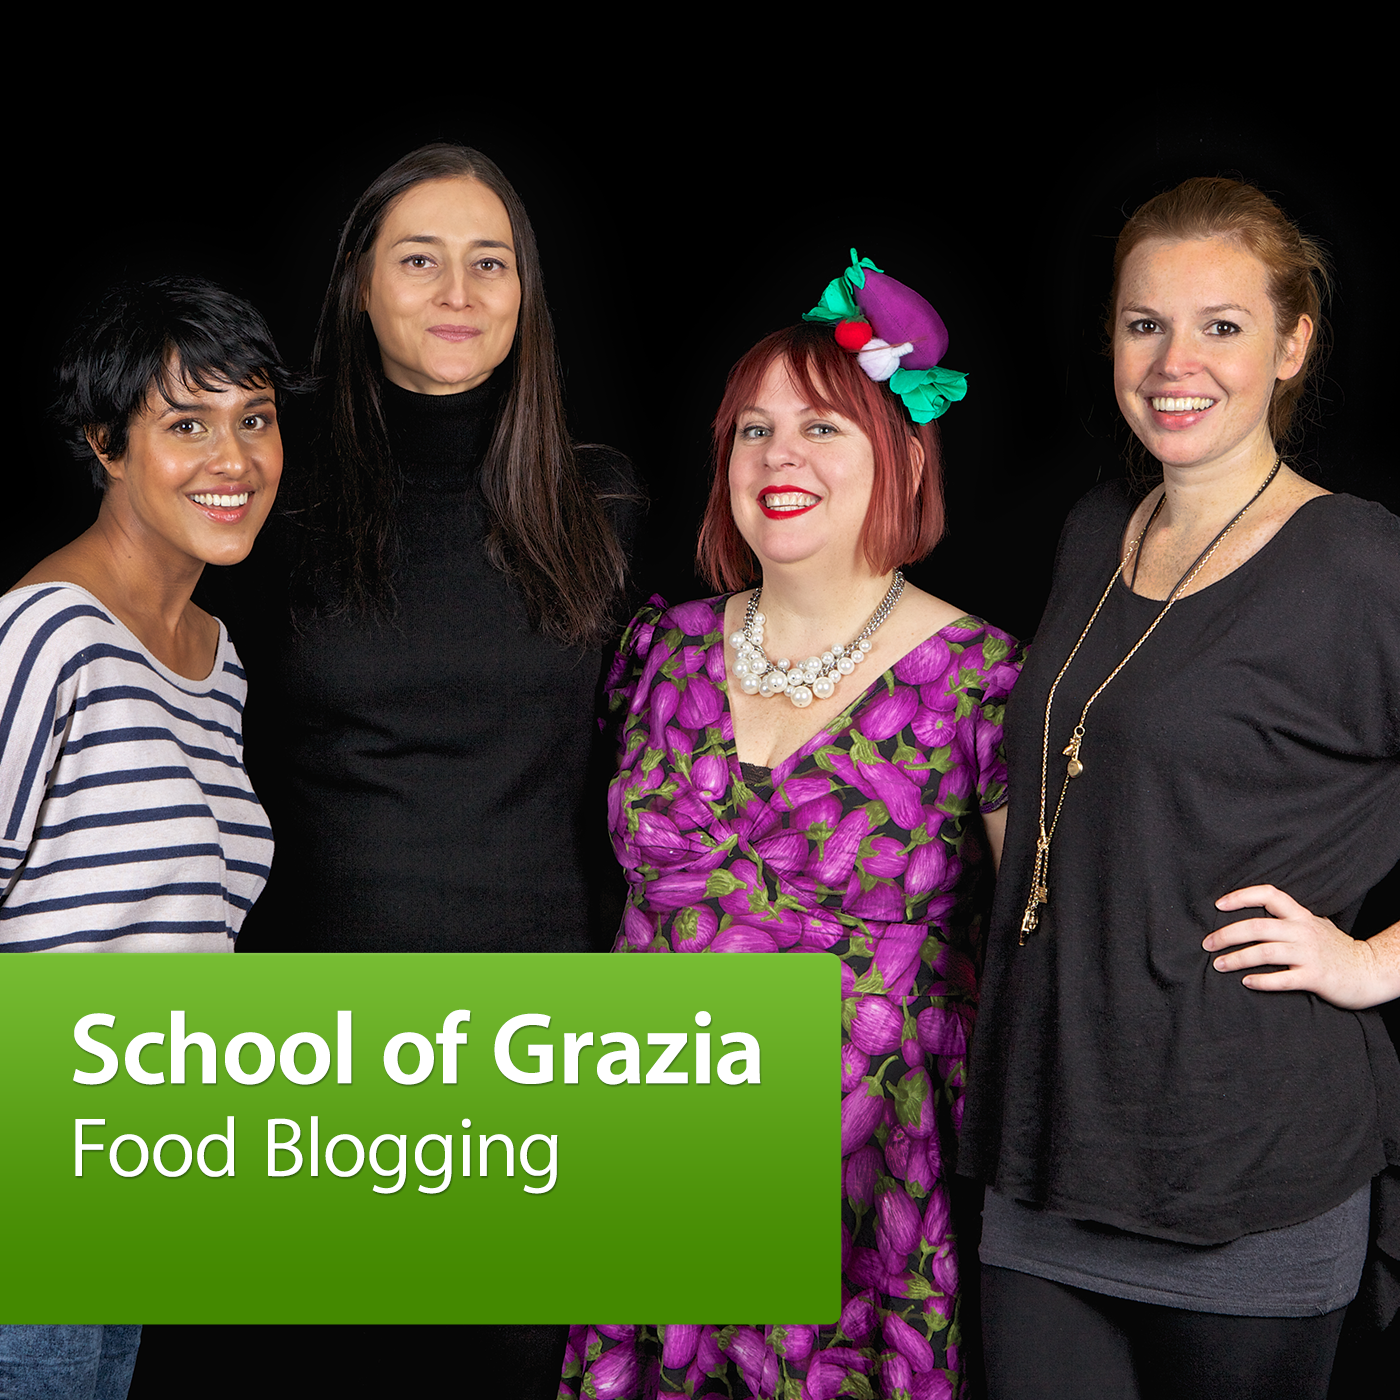 School of Grazia: Food Blogging